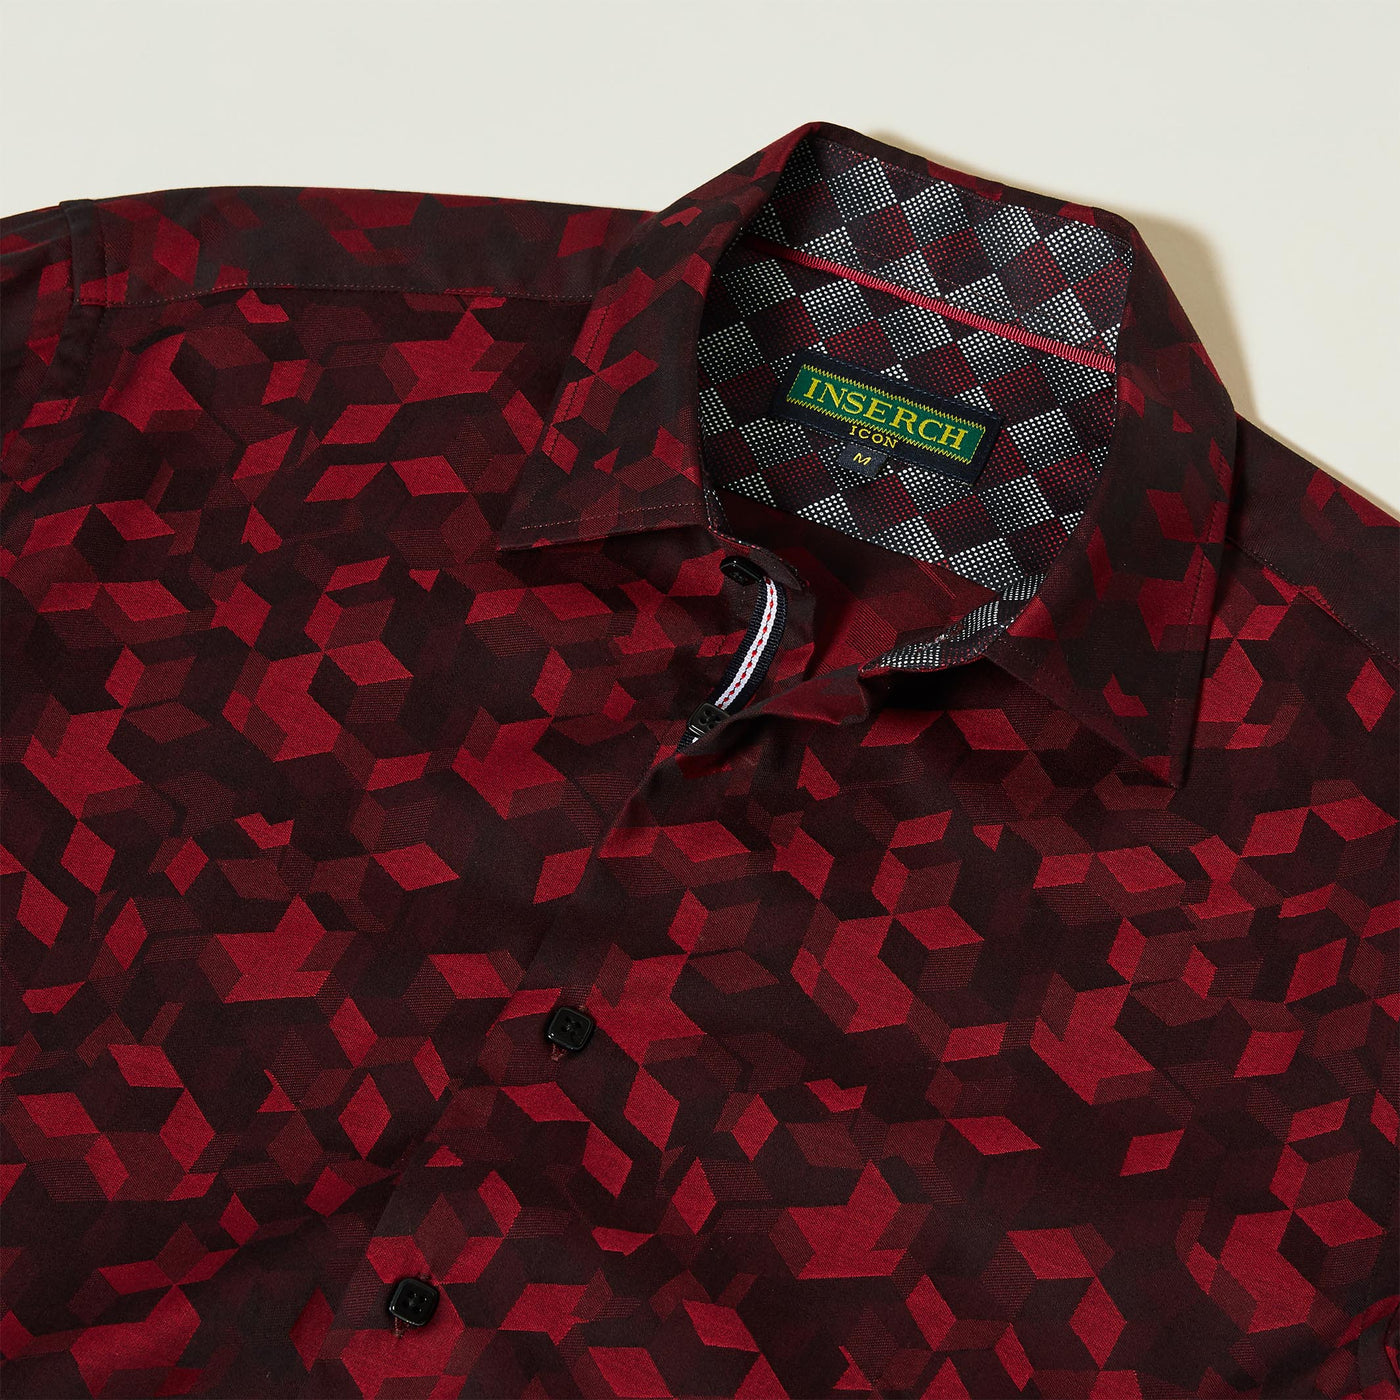 Cotton Jacquard Shirt with Geometric Pattern - INSERCH